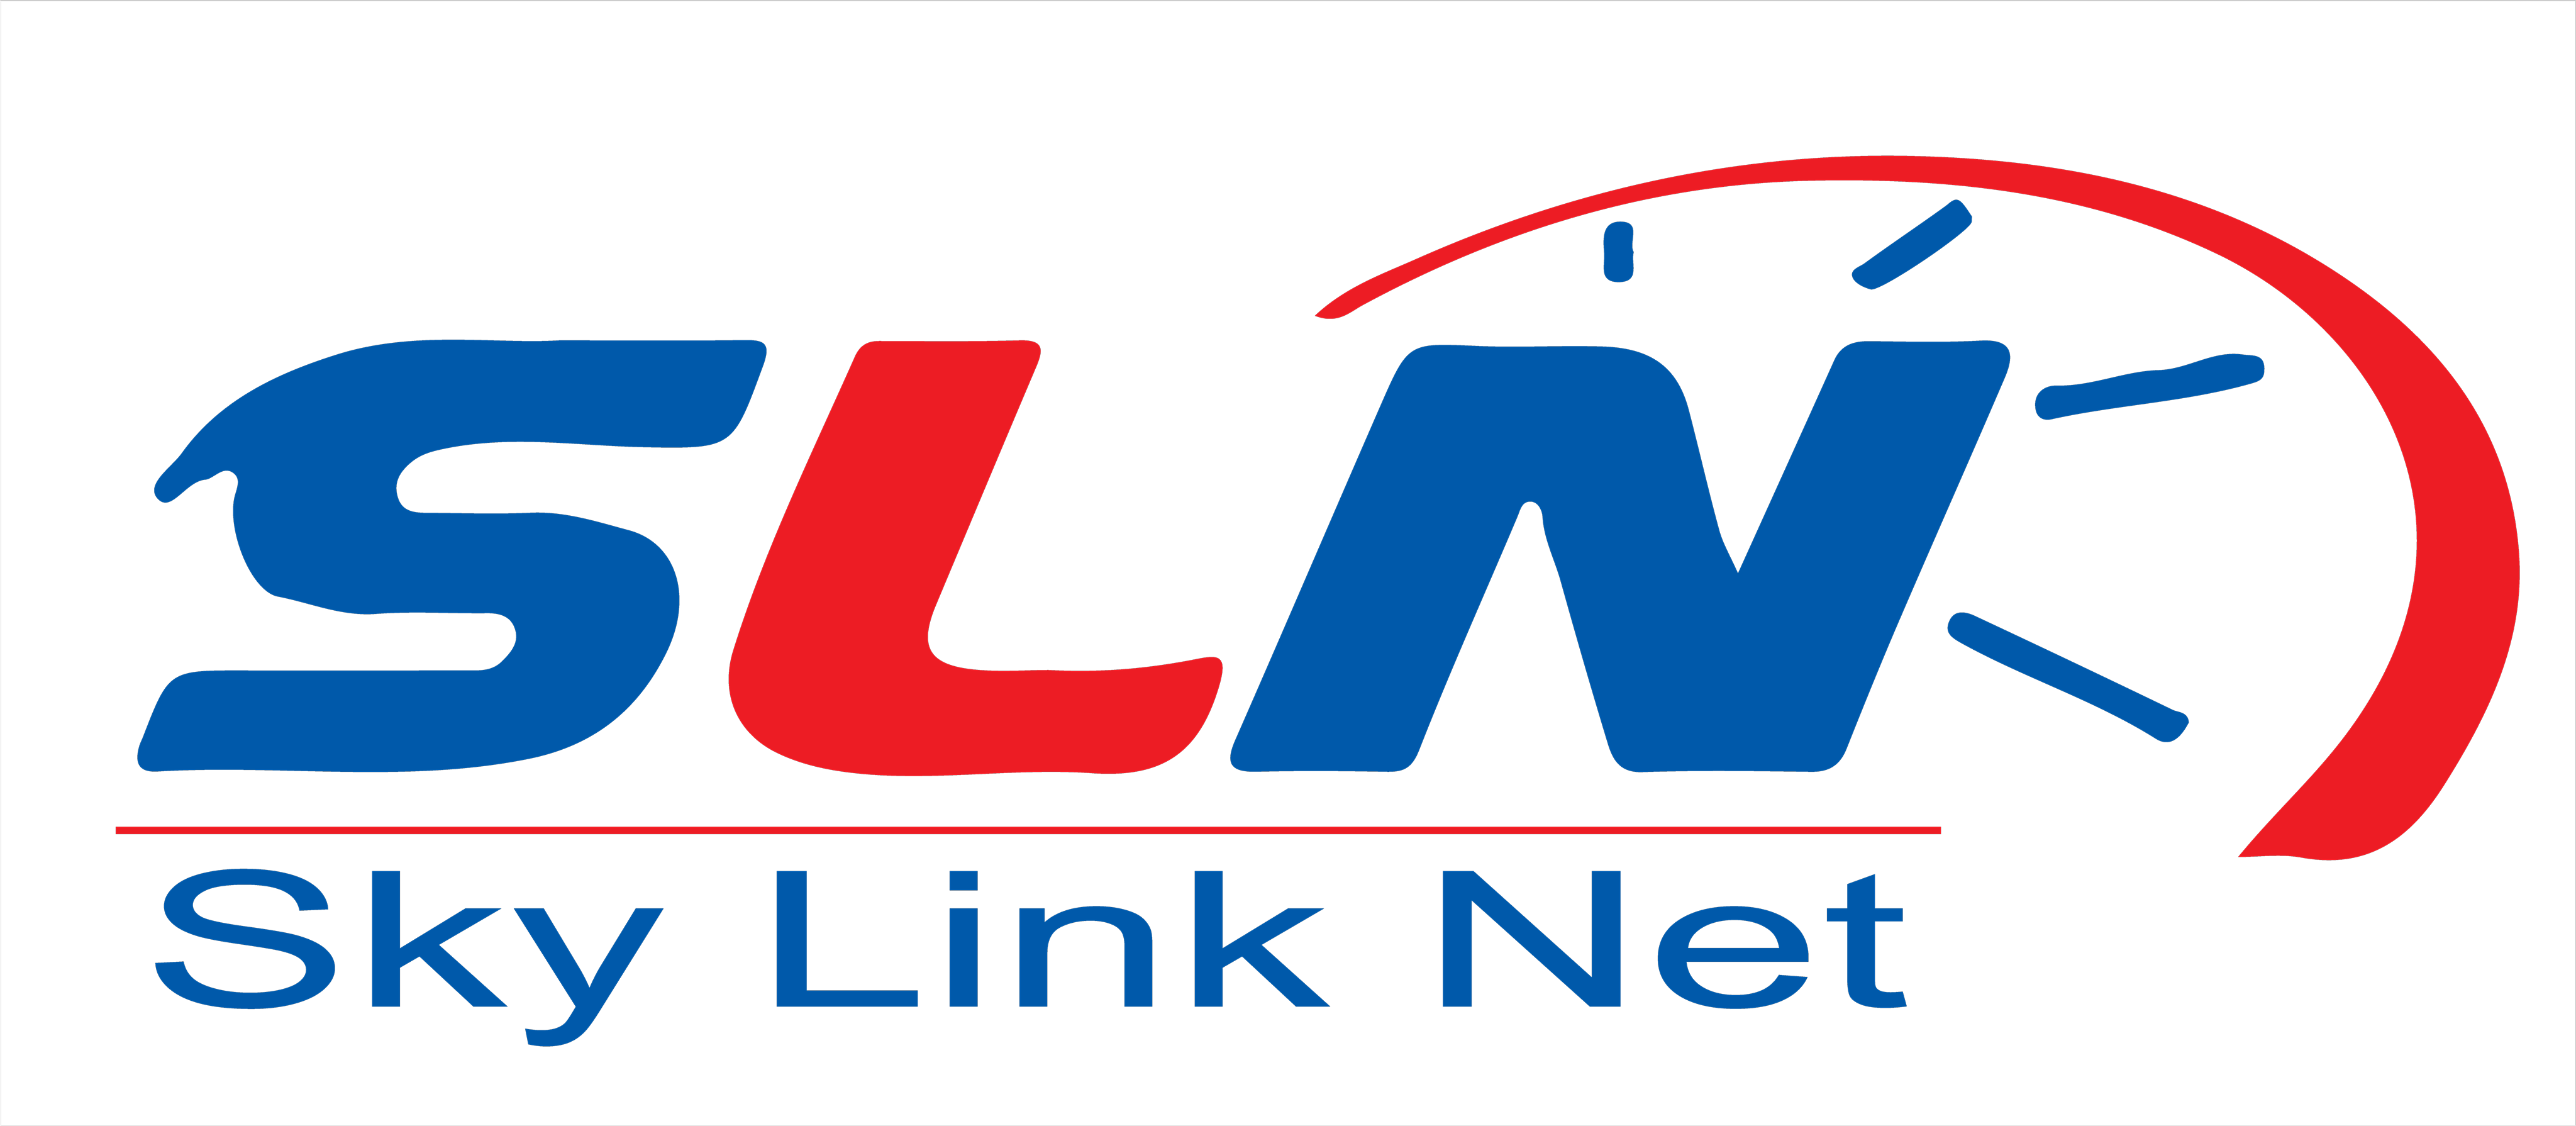 Sky Link Net